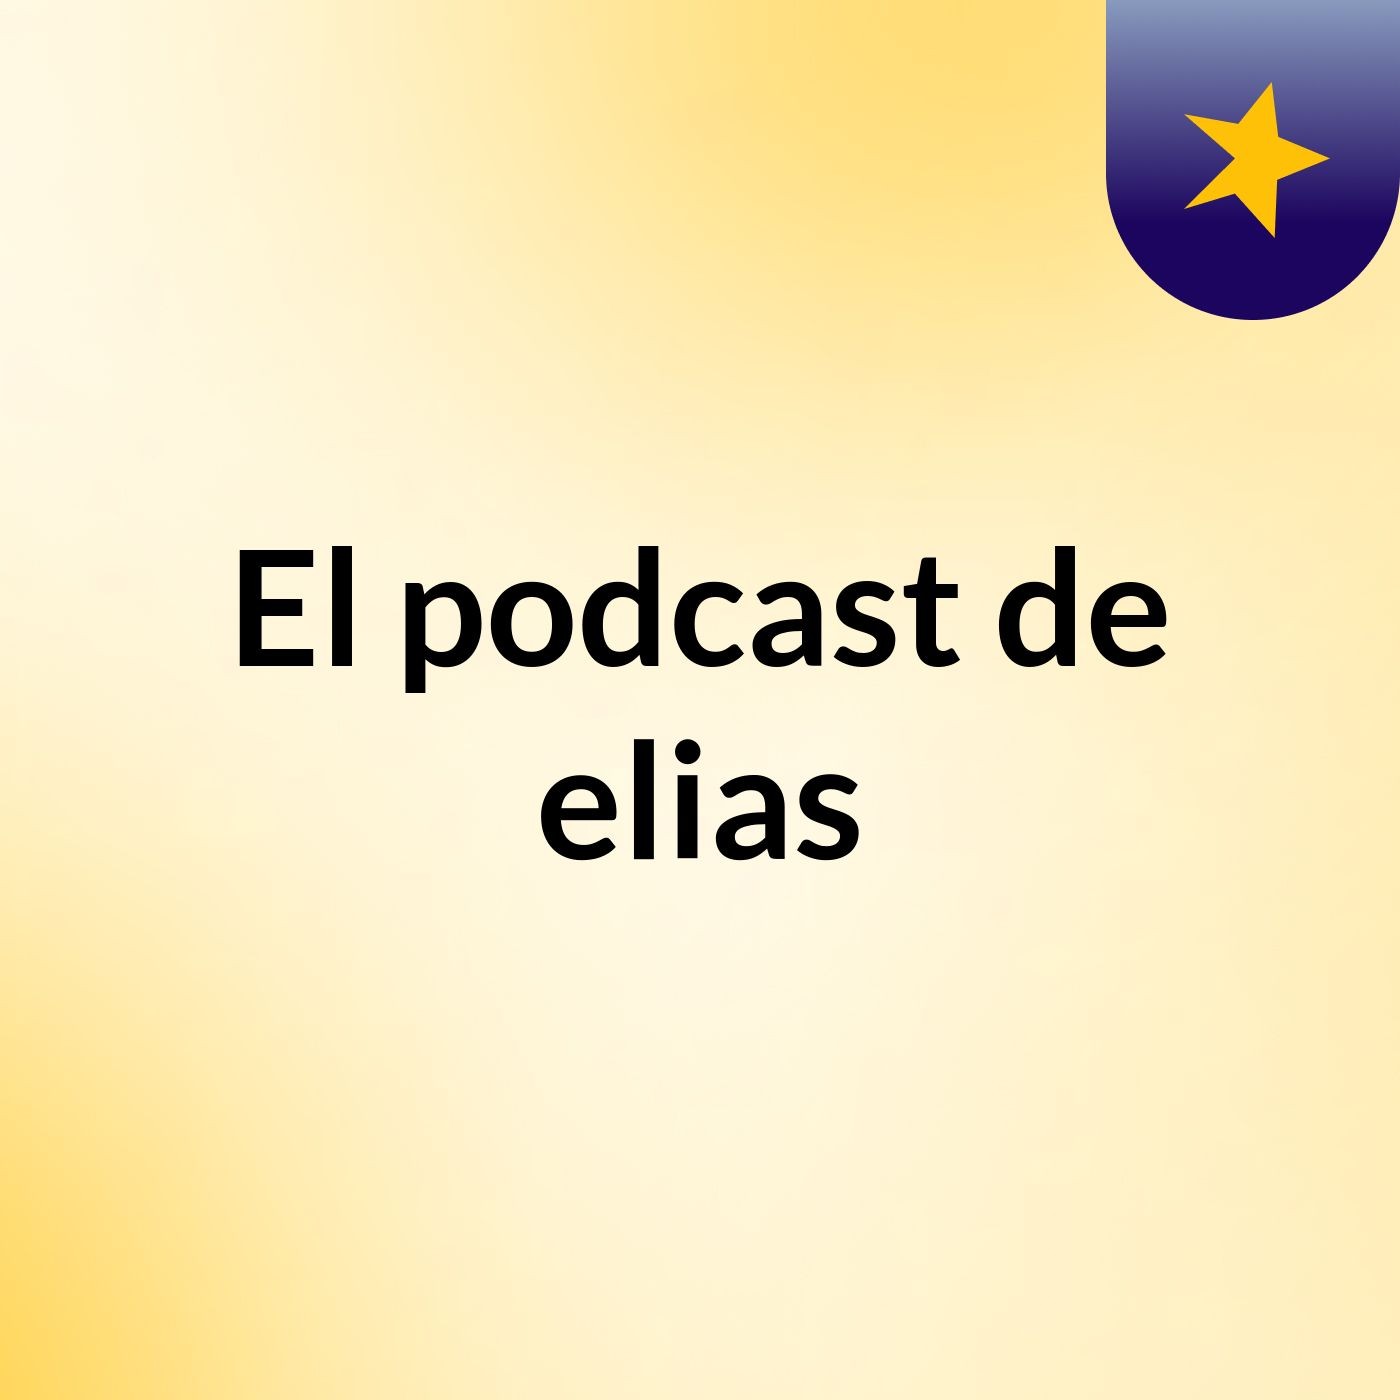 El podcast de elias